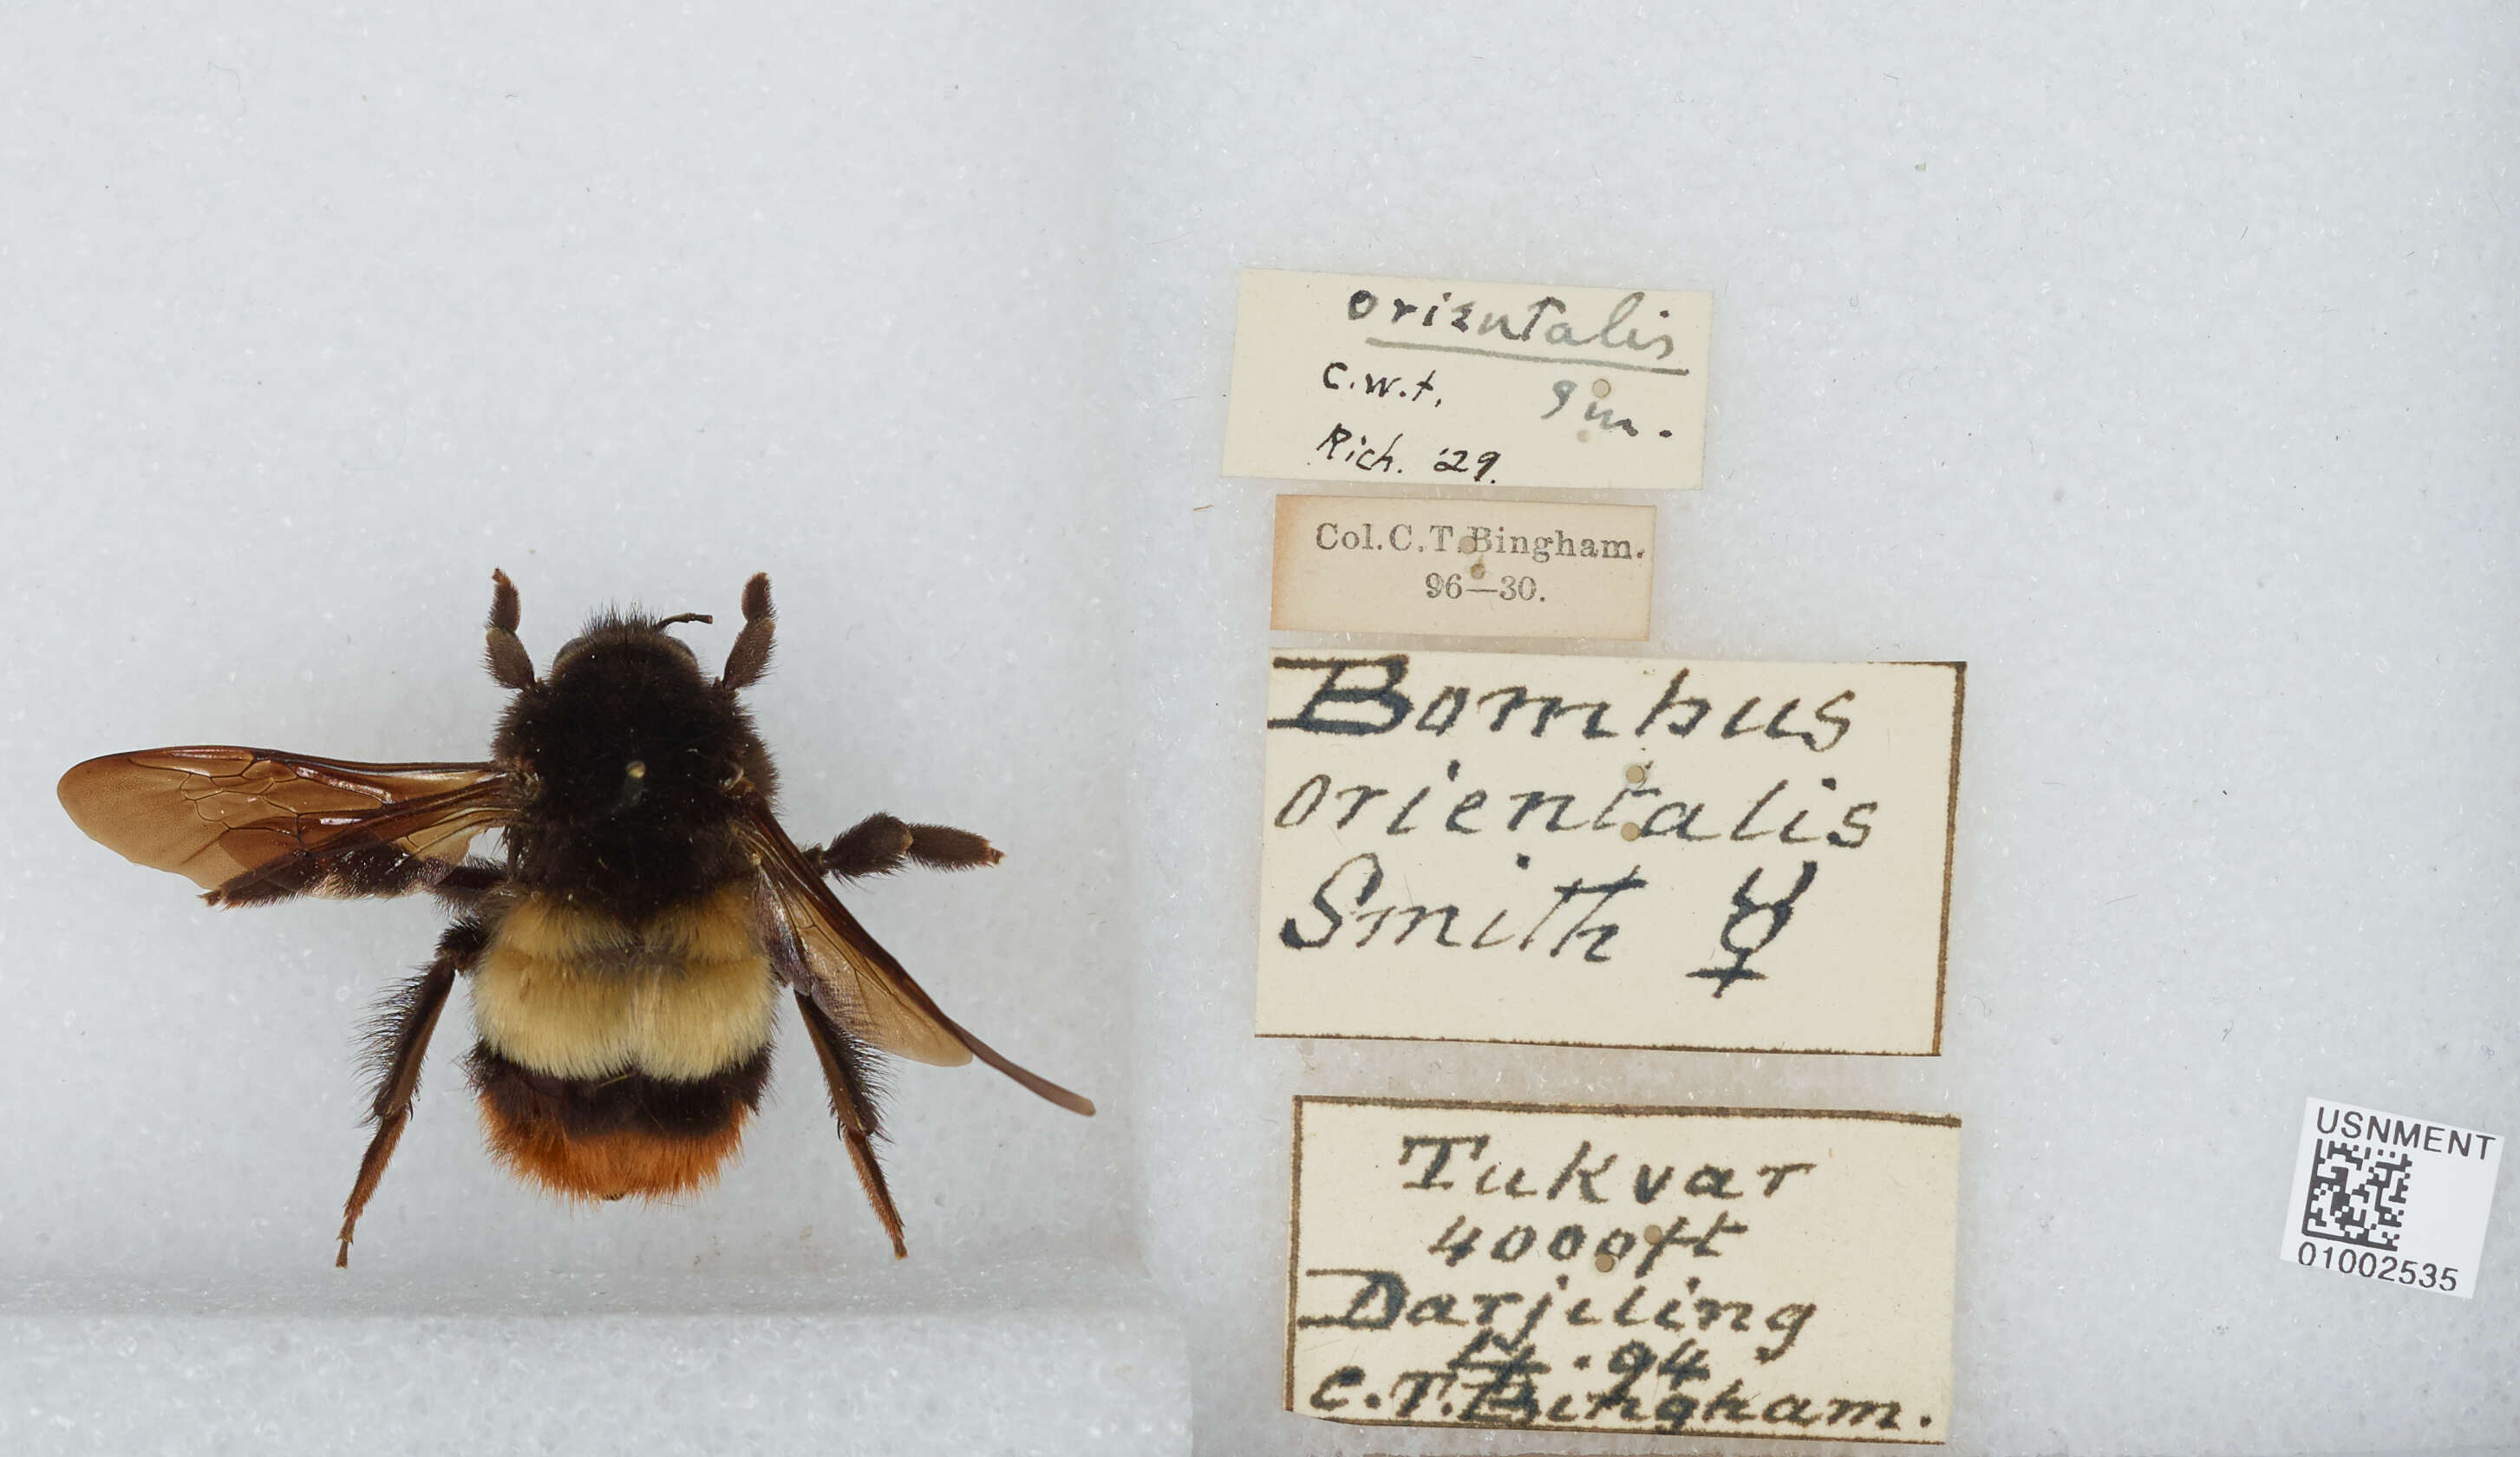 Image of Bombus haemorrhoidalis Smith 1852